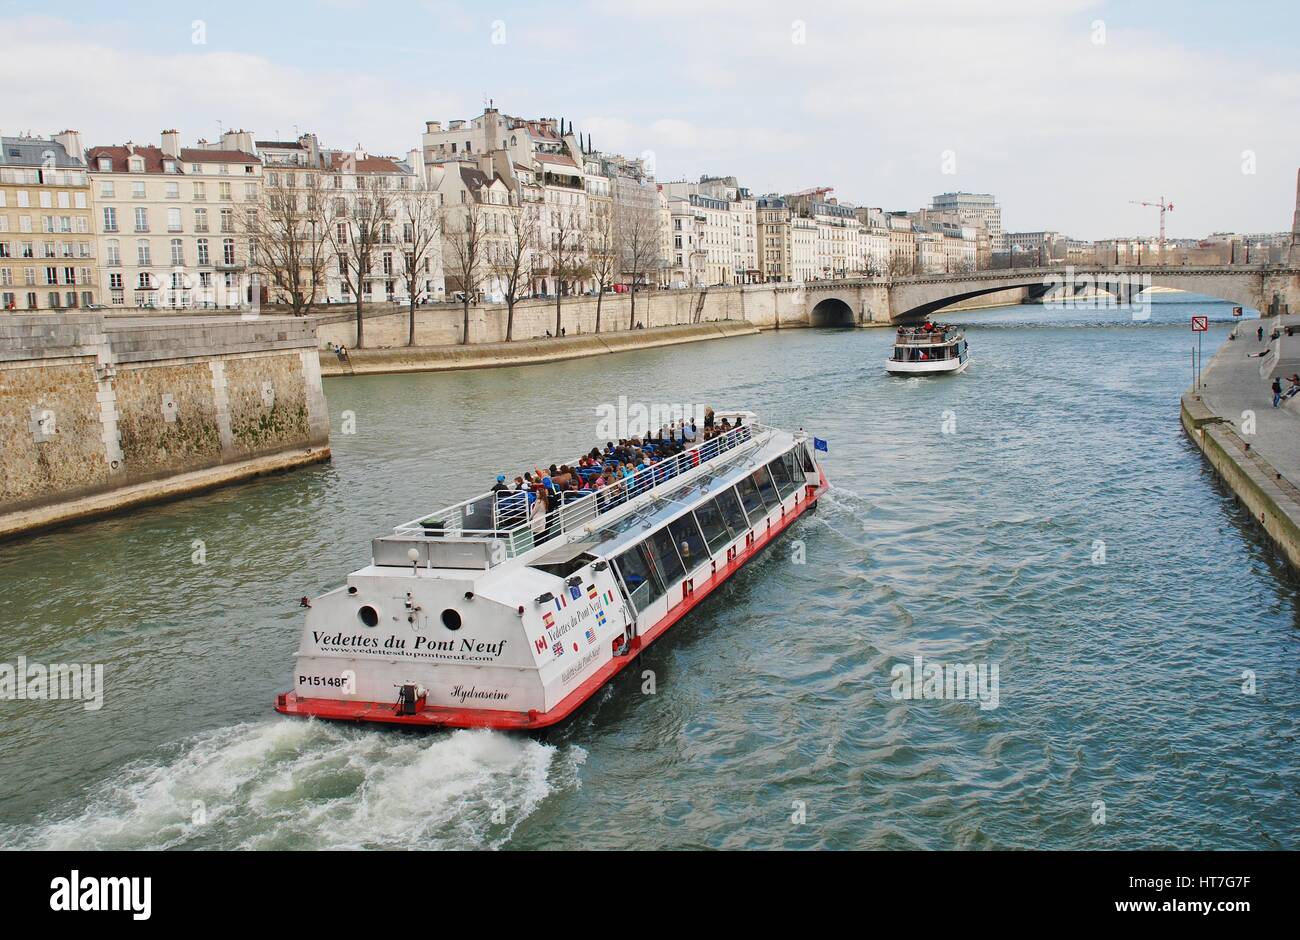 Un bateau de plaisance croisières vers le Pont Saint Michel sur la Seine à Paris, France. De nombreuses visites ont lieu sur la rivière tous les jours. Banque D'Images